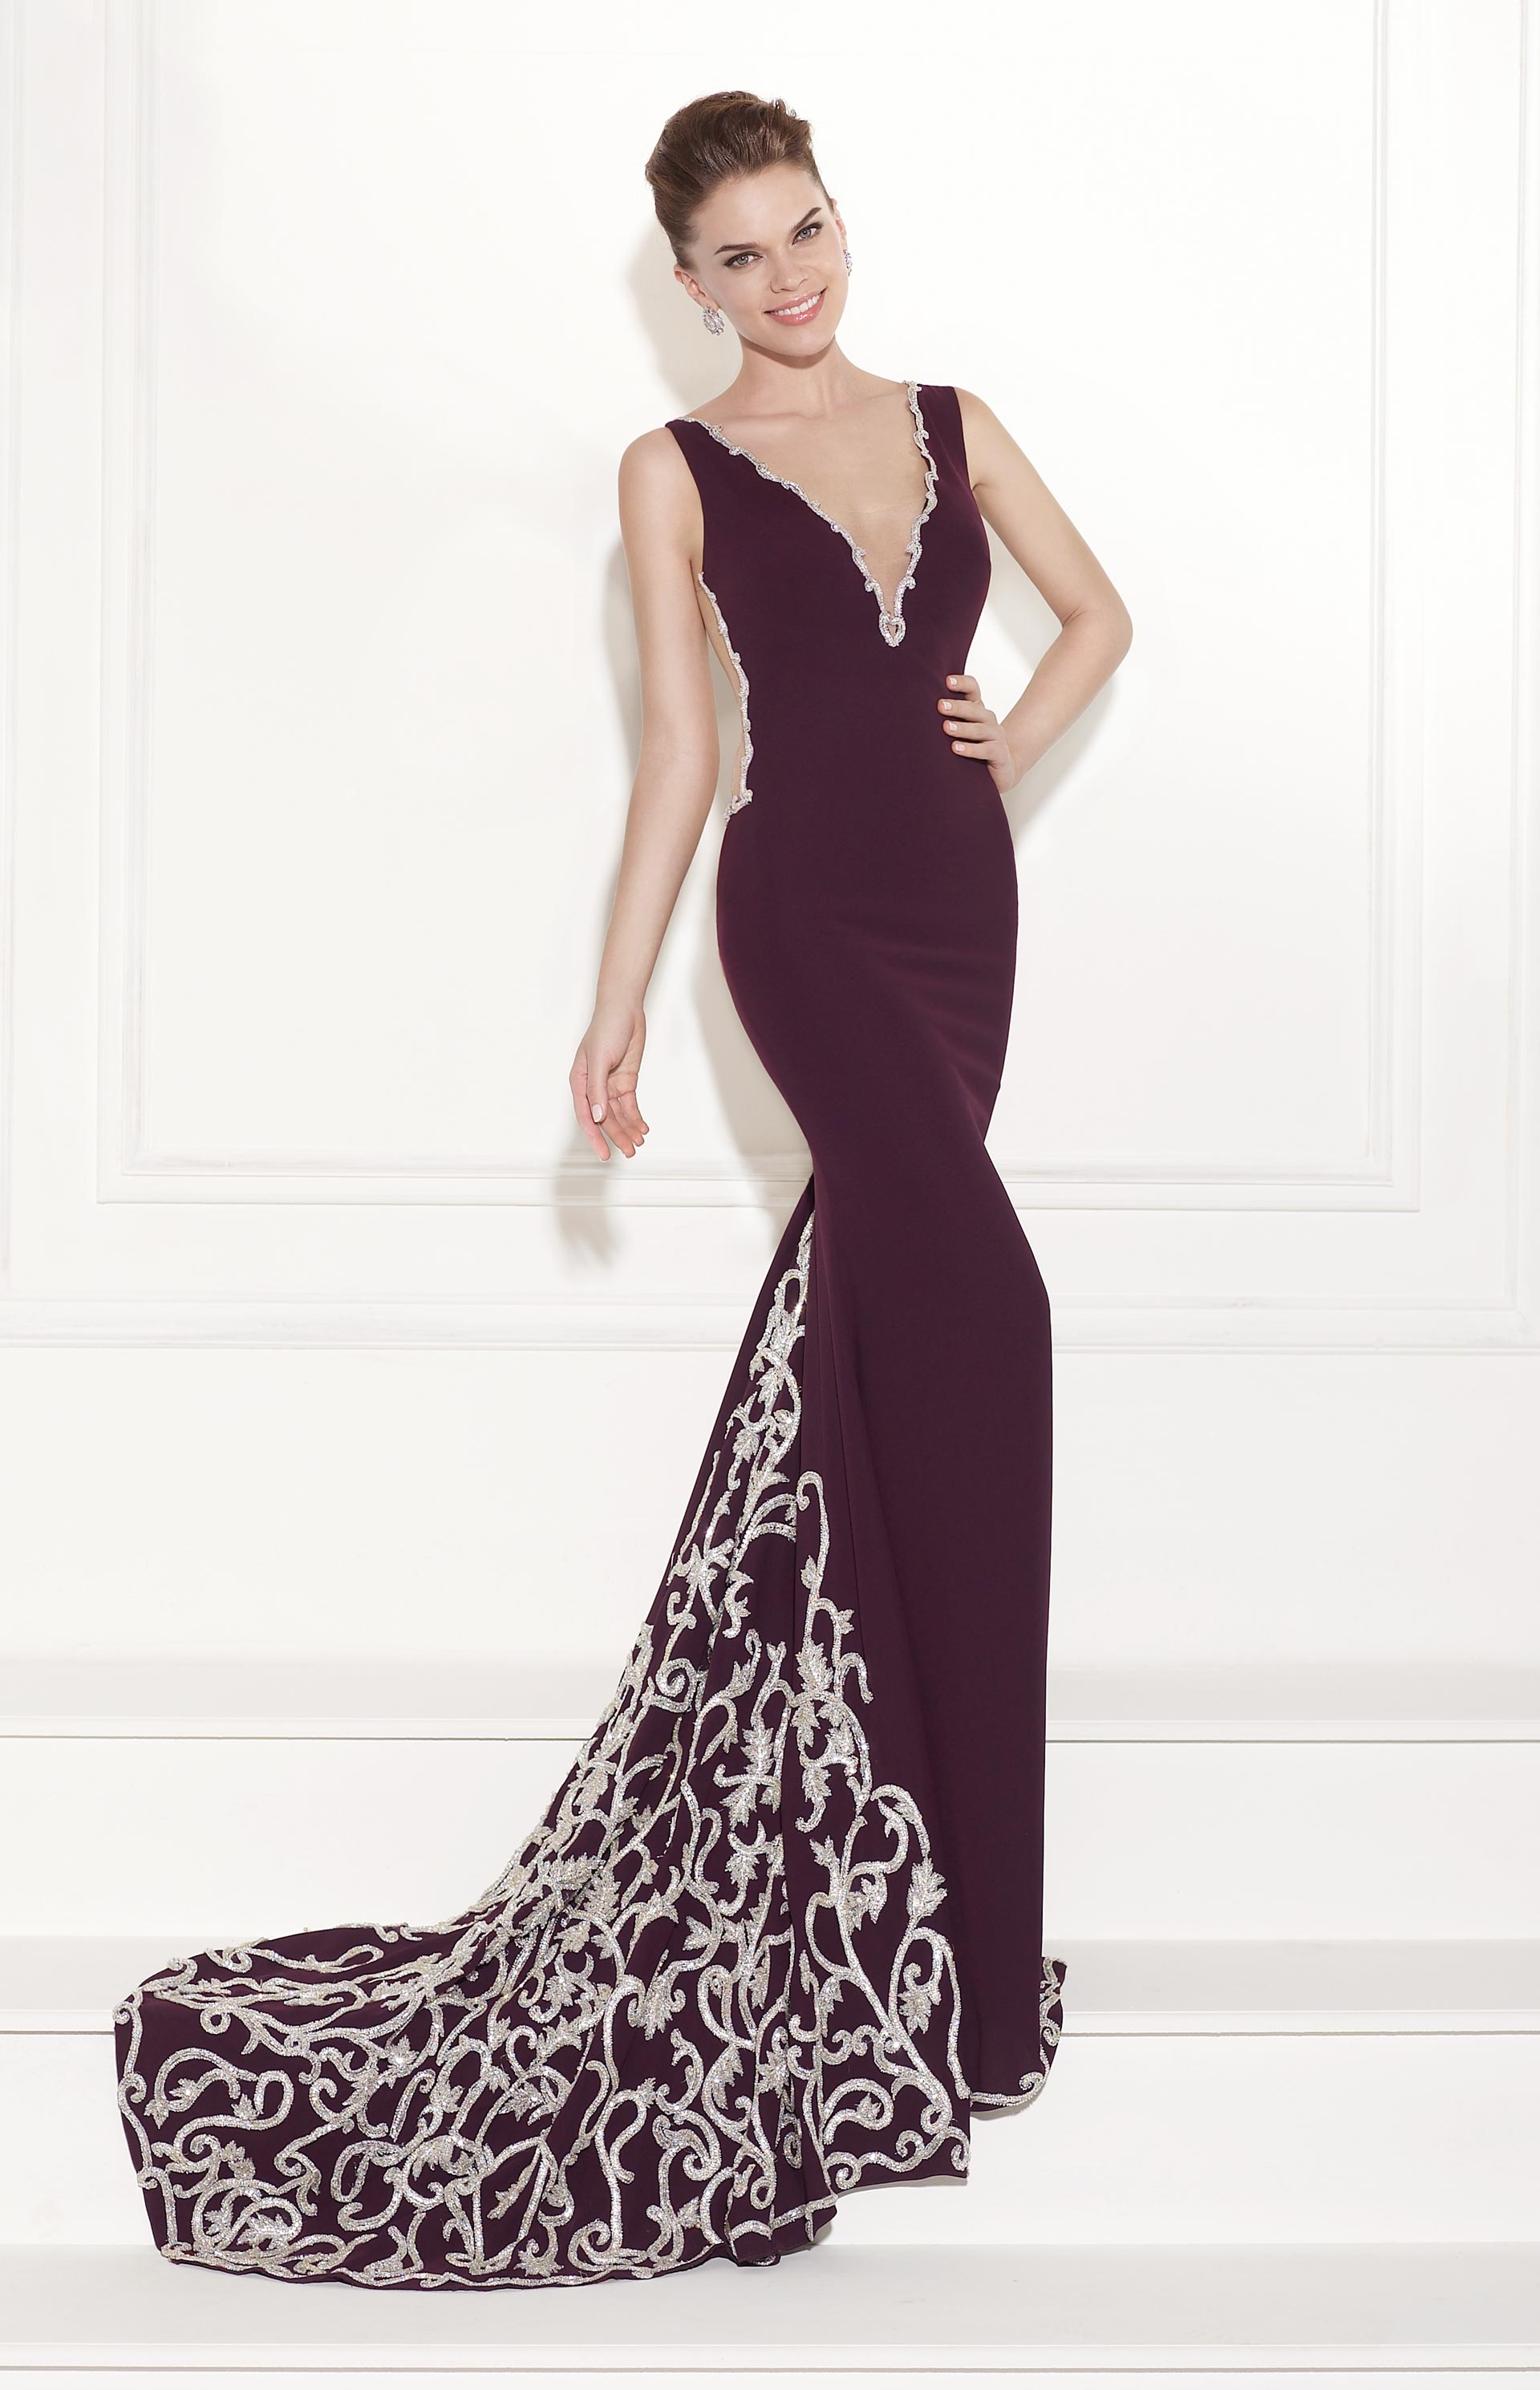 Evening Dresses by Turkish Designer Tarik Ediz - fashionsy.com